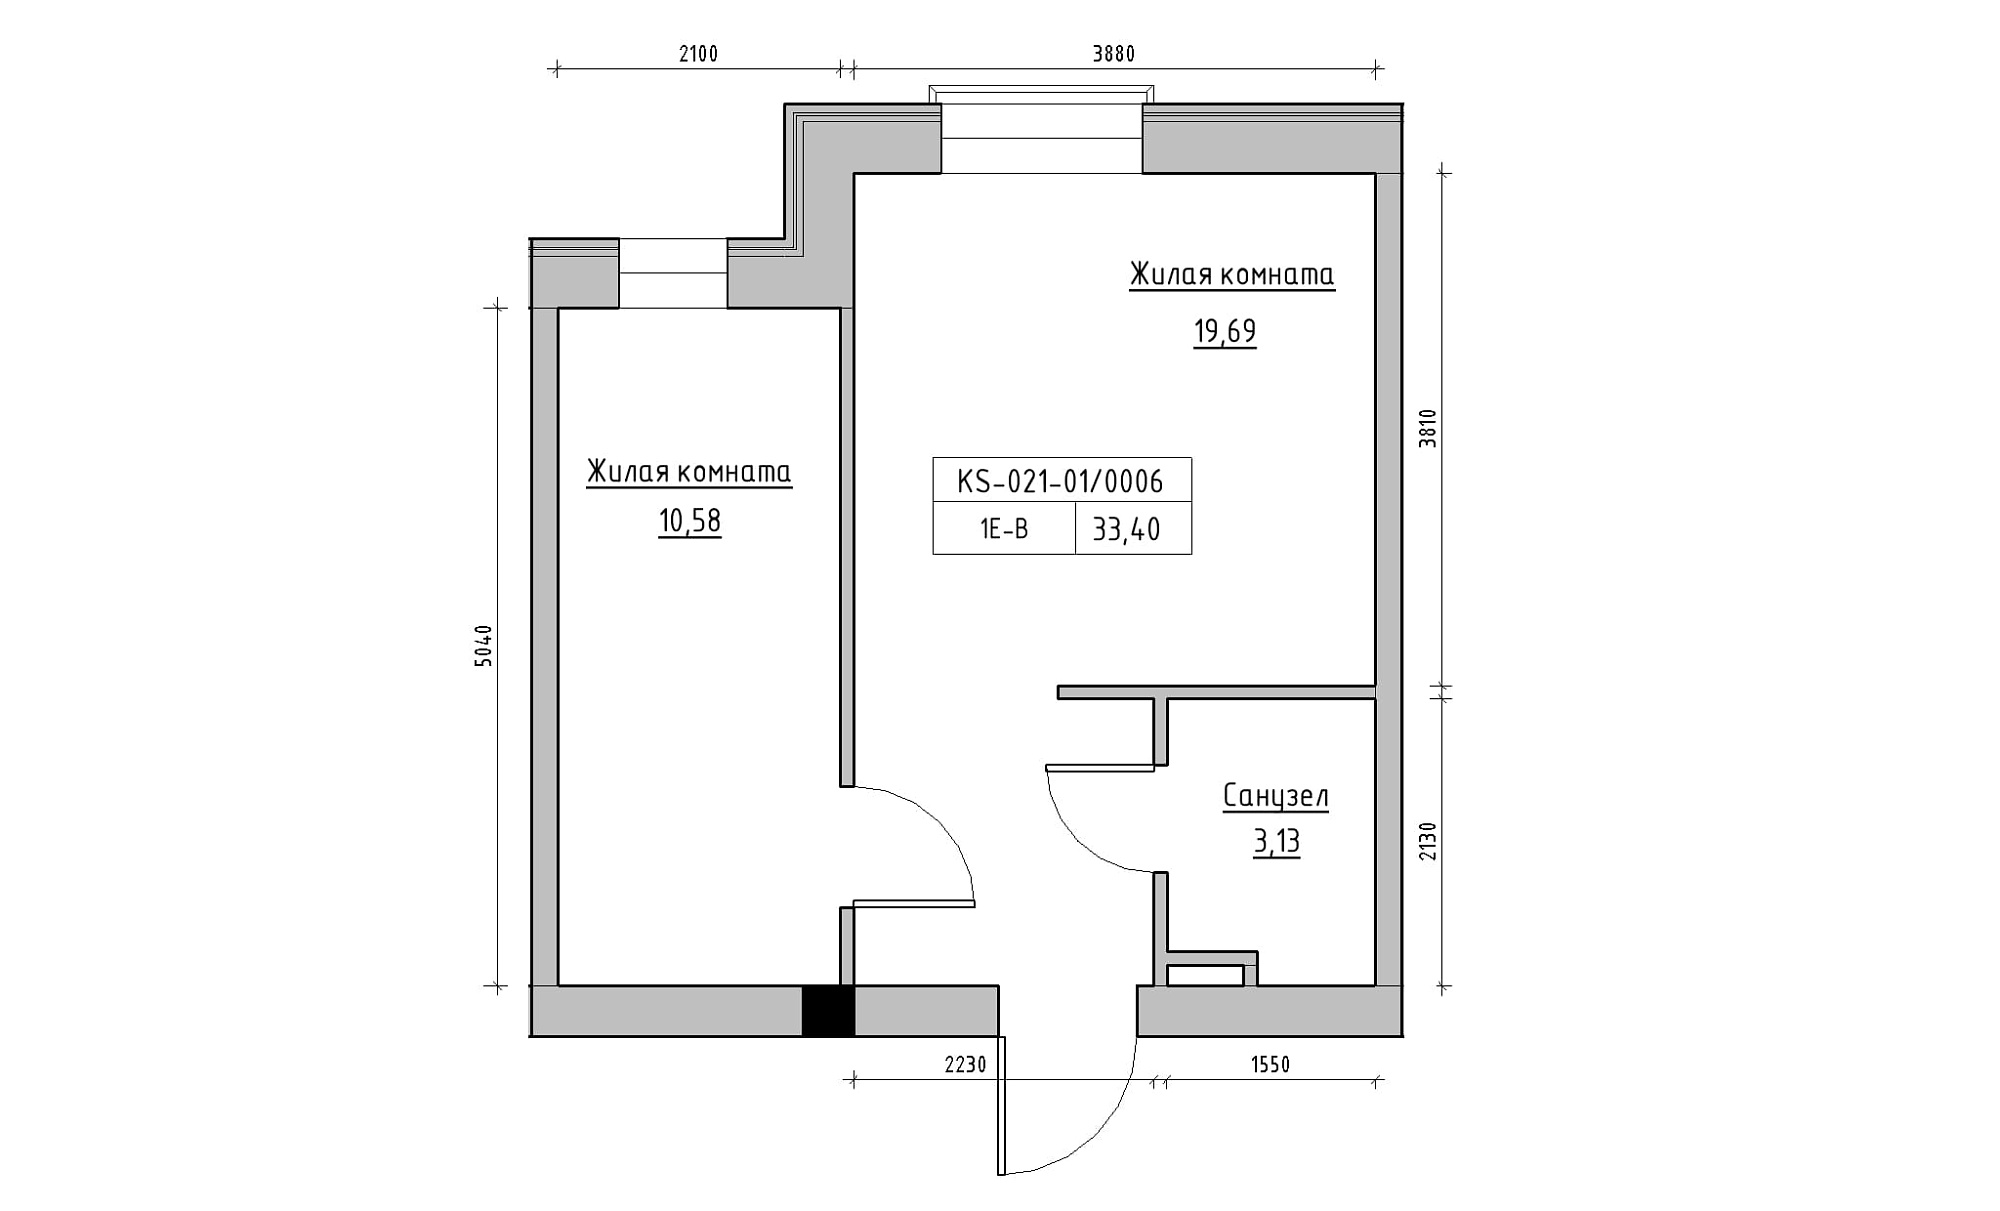 Планування 1-к квартира площею 33.4м2, KS-021-01/0006.